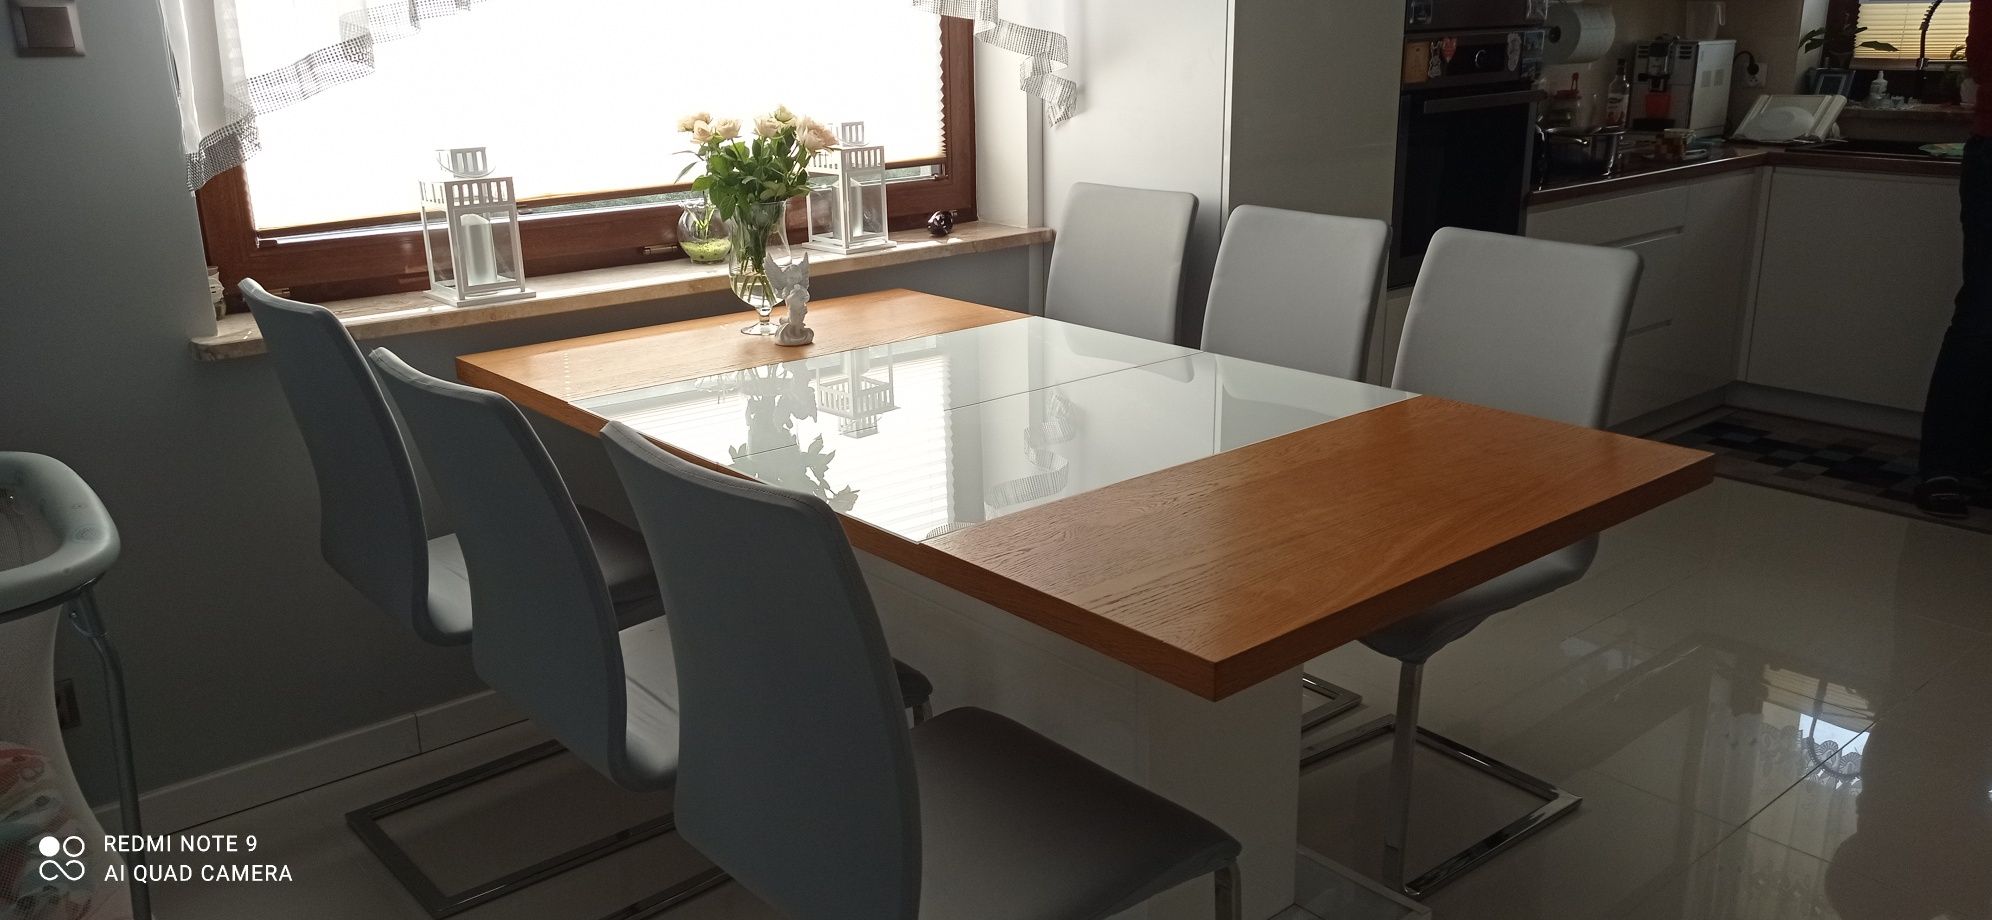 Stół modern firmy paged +6 krzeseł firmy paged